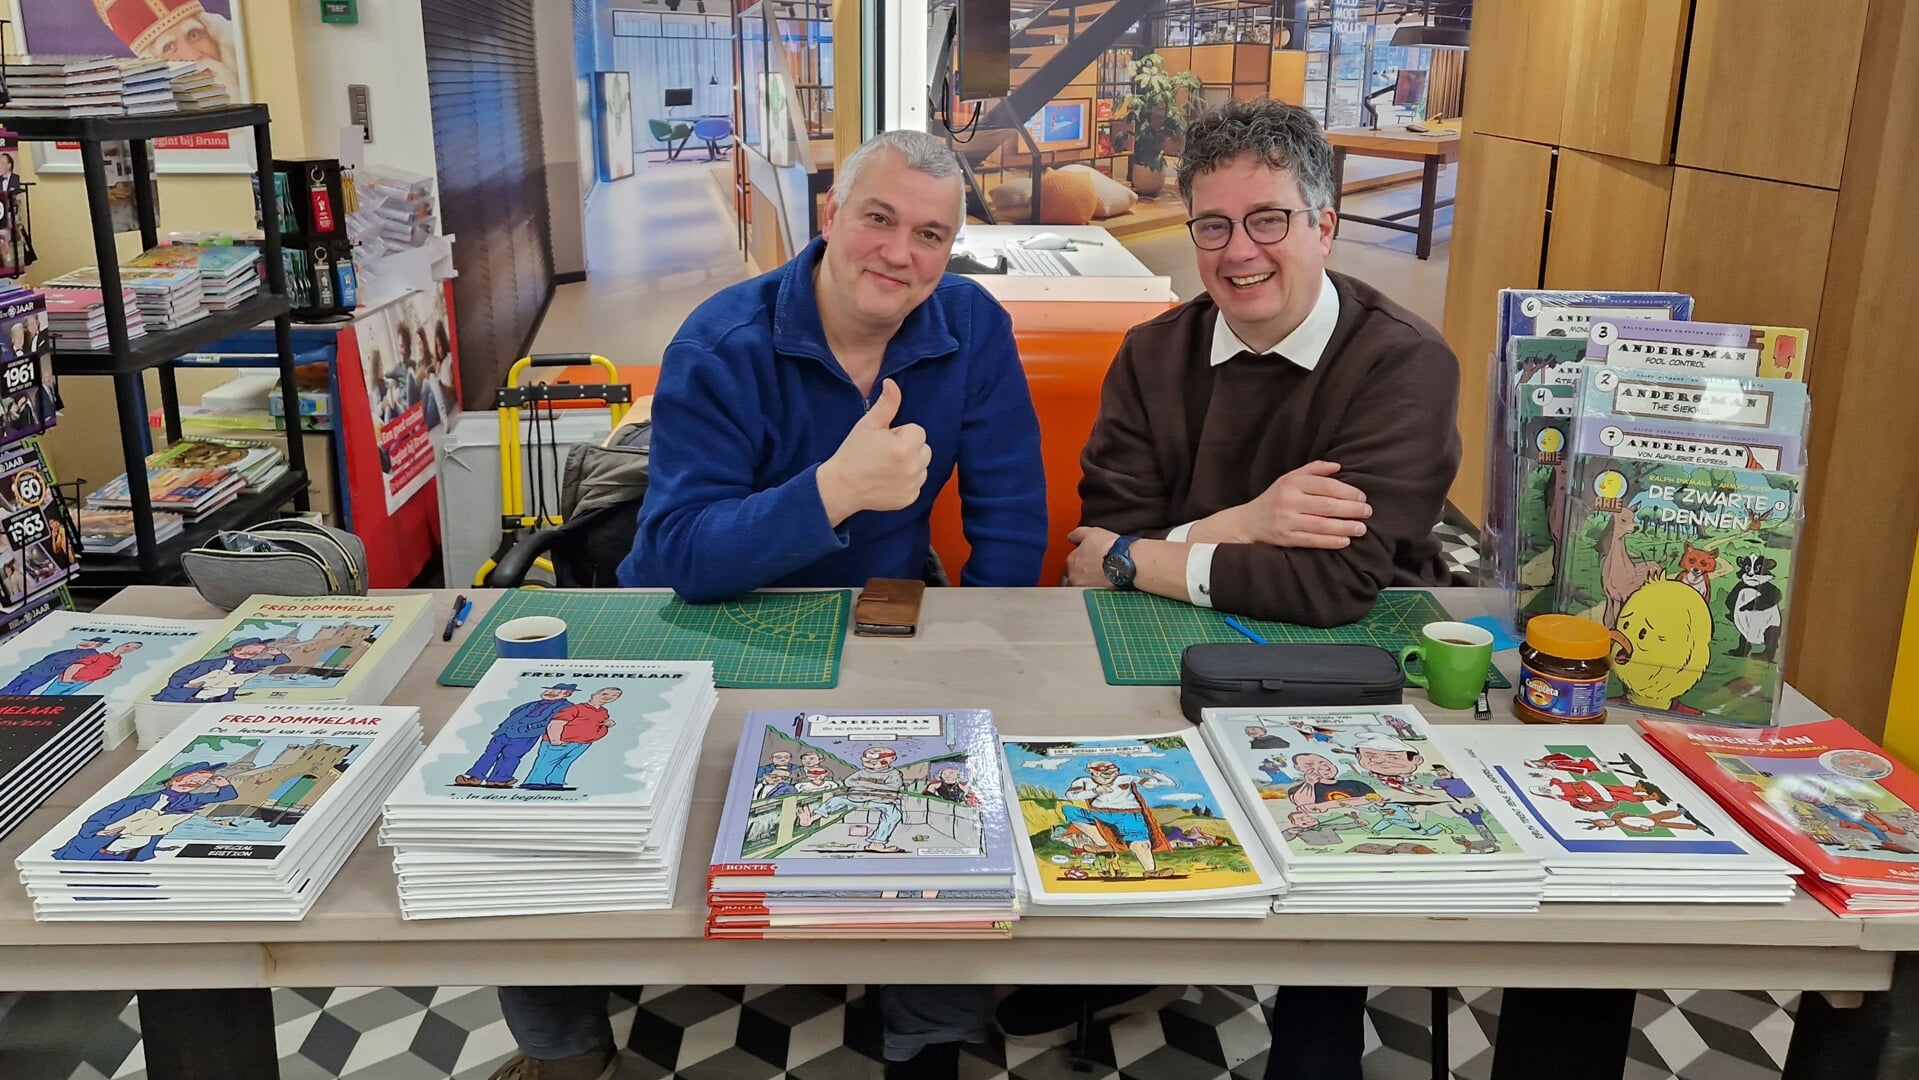 Ferry Segers en Ralph Dikmans signeerden zondagmiddag hun albums in boekhandel Bruna in Boxtel.